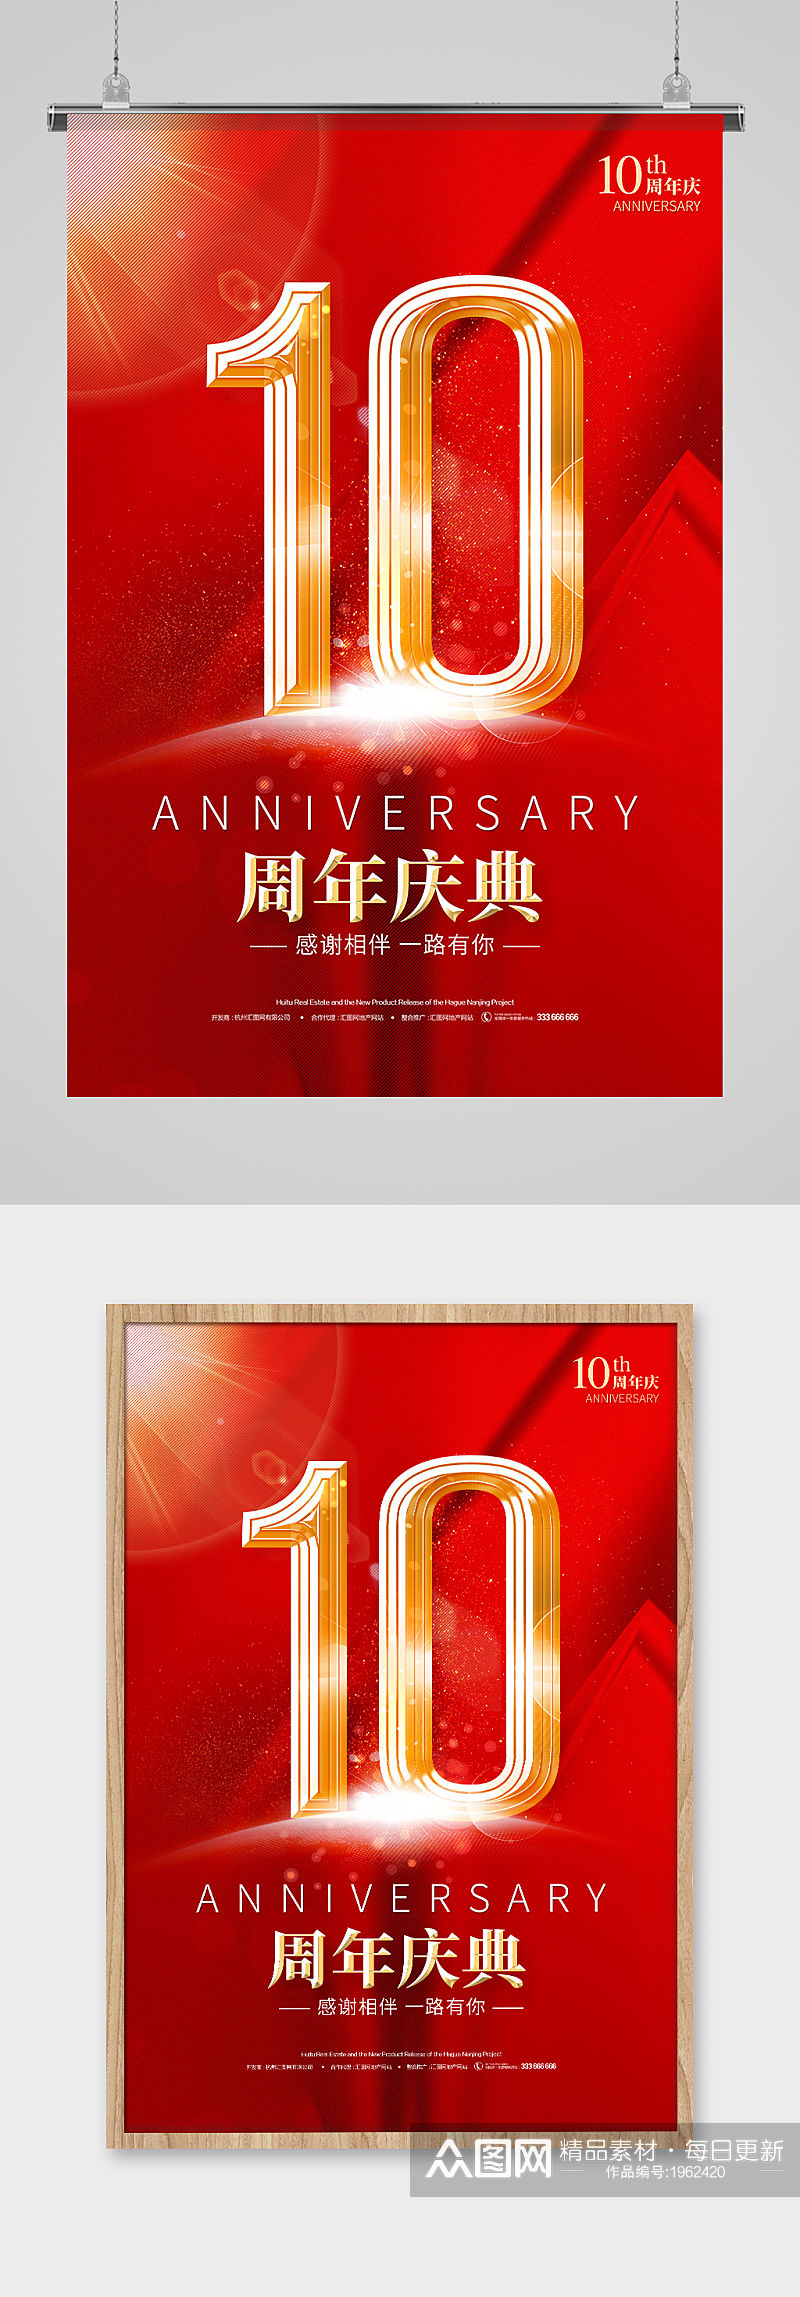 红金色公司10周年店庆海报设计素材